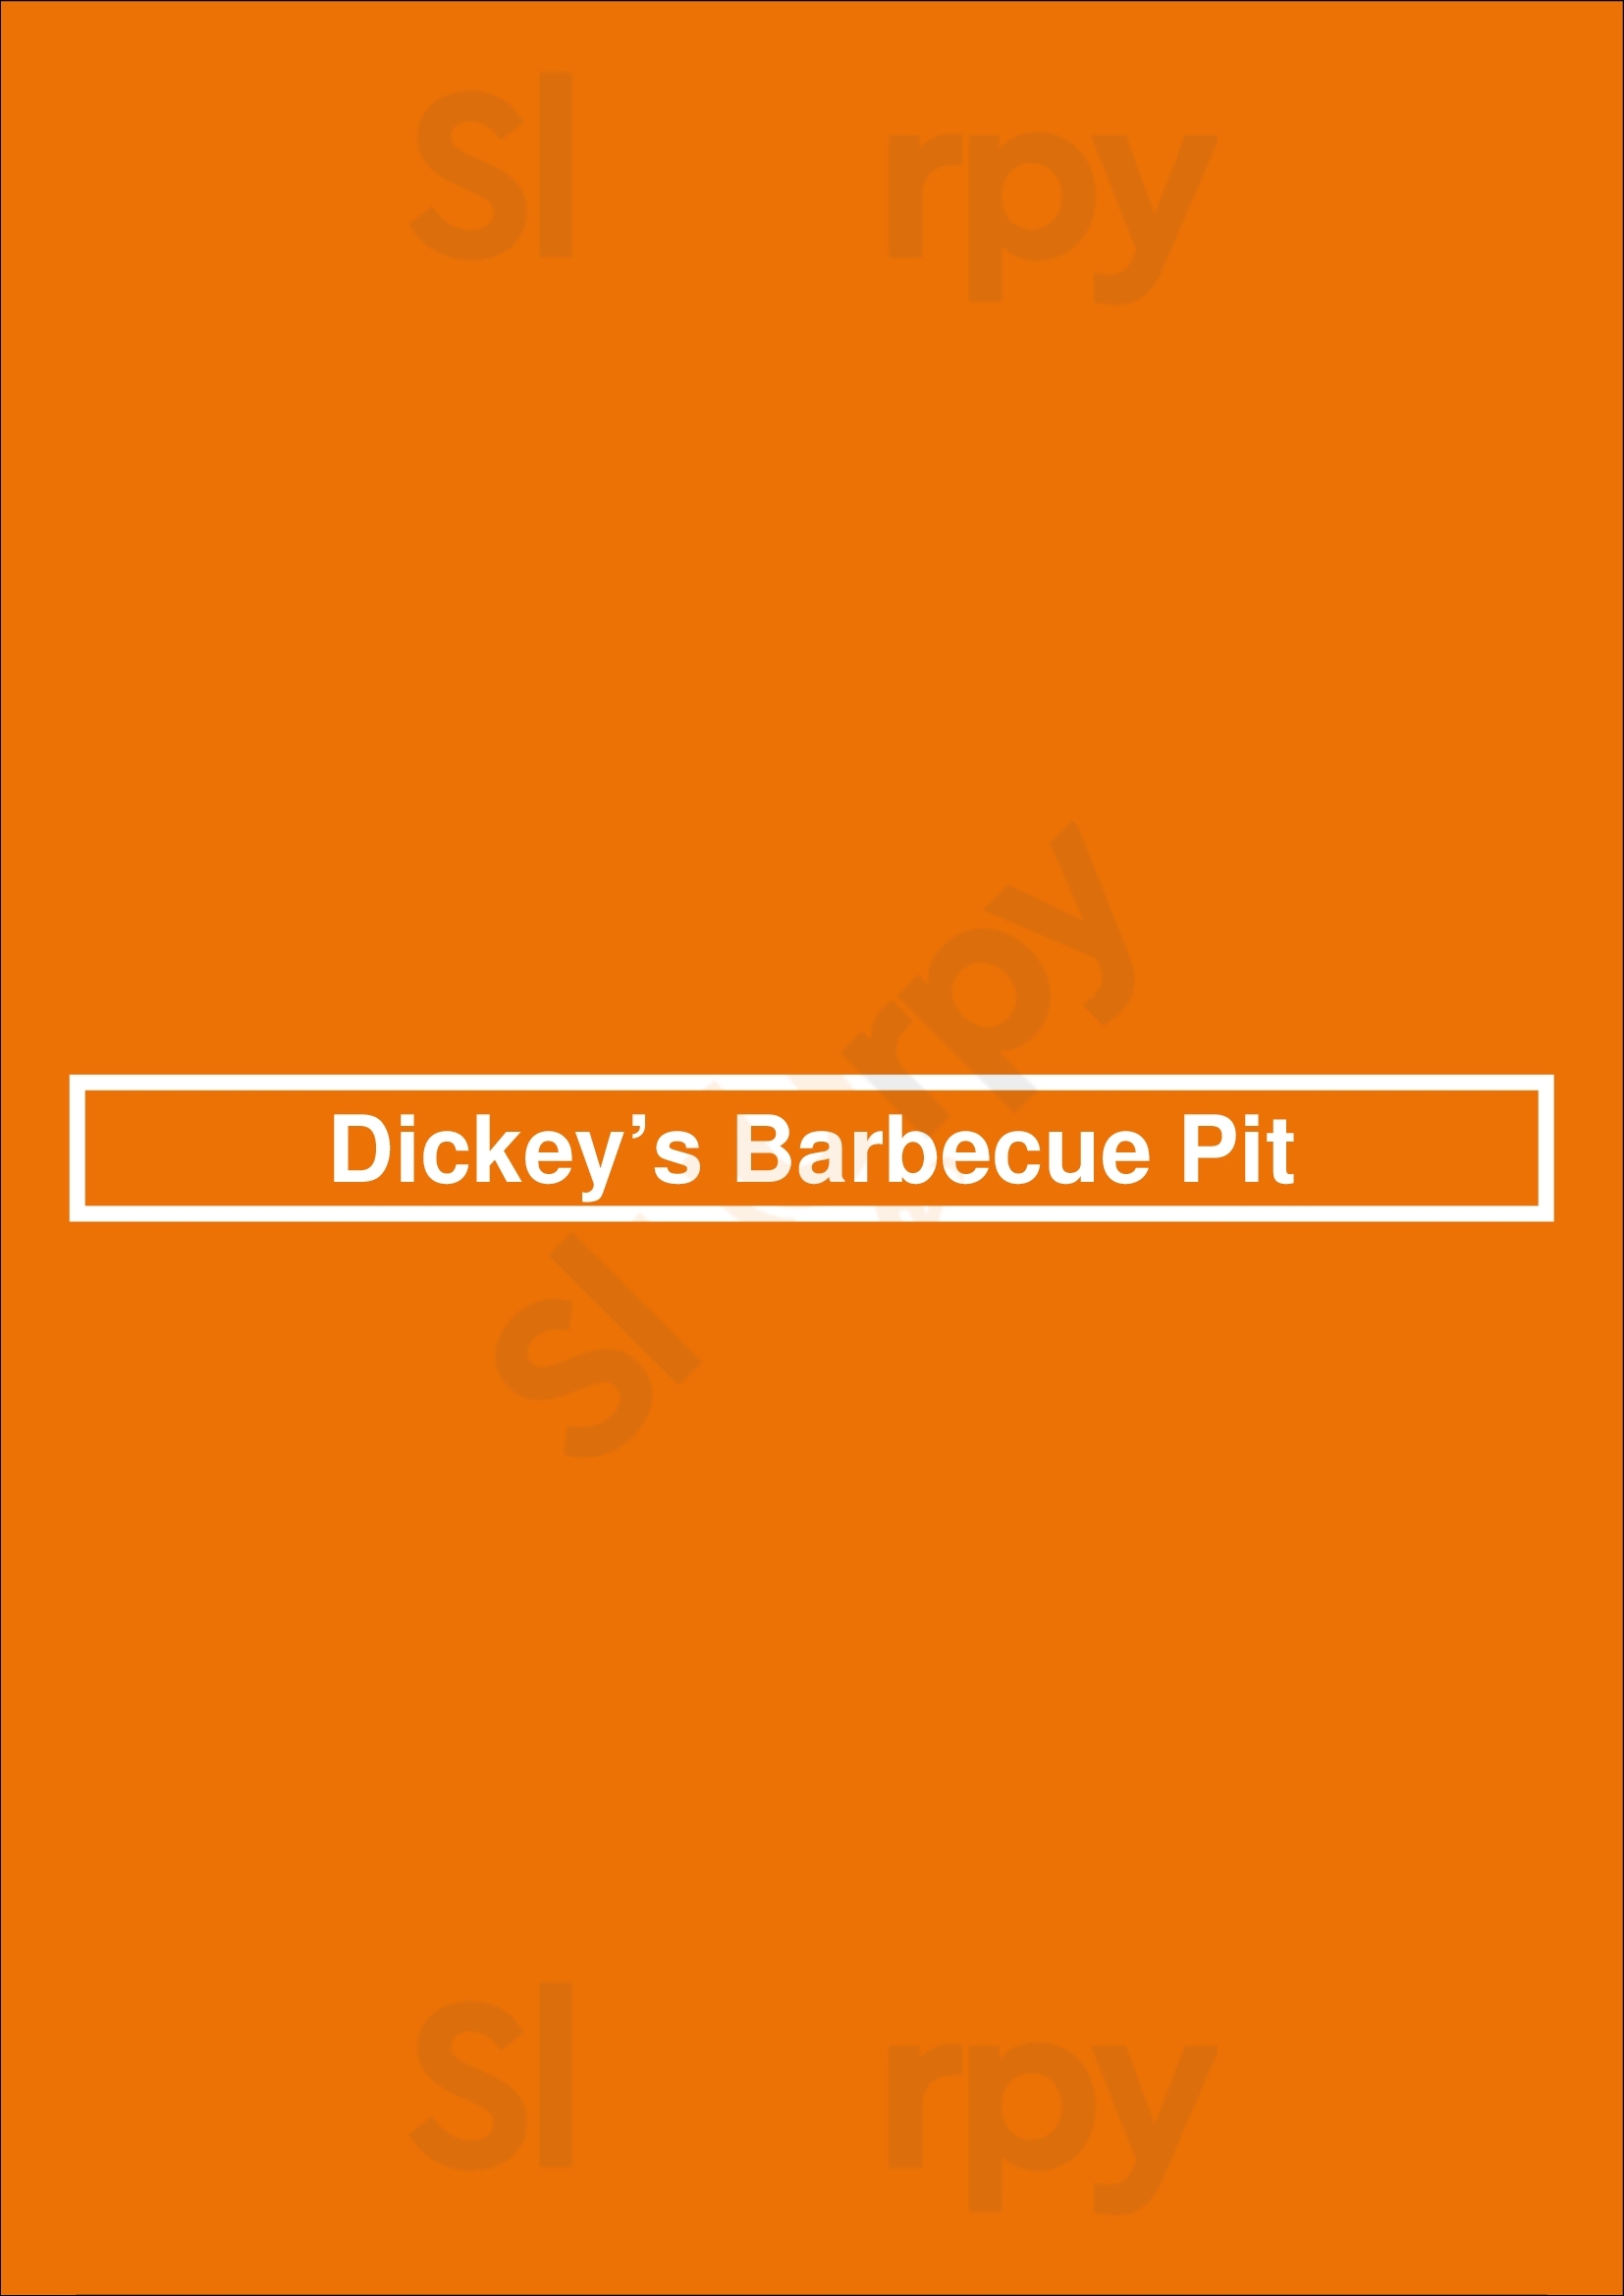 Dickey’s Barbecue Pit Dallas Menu - 1